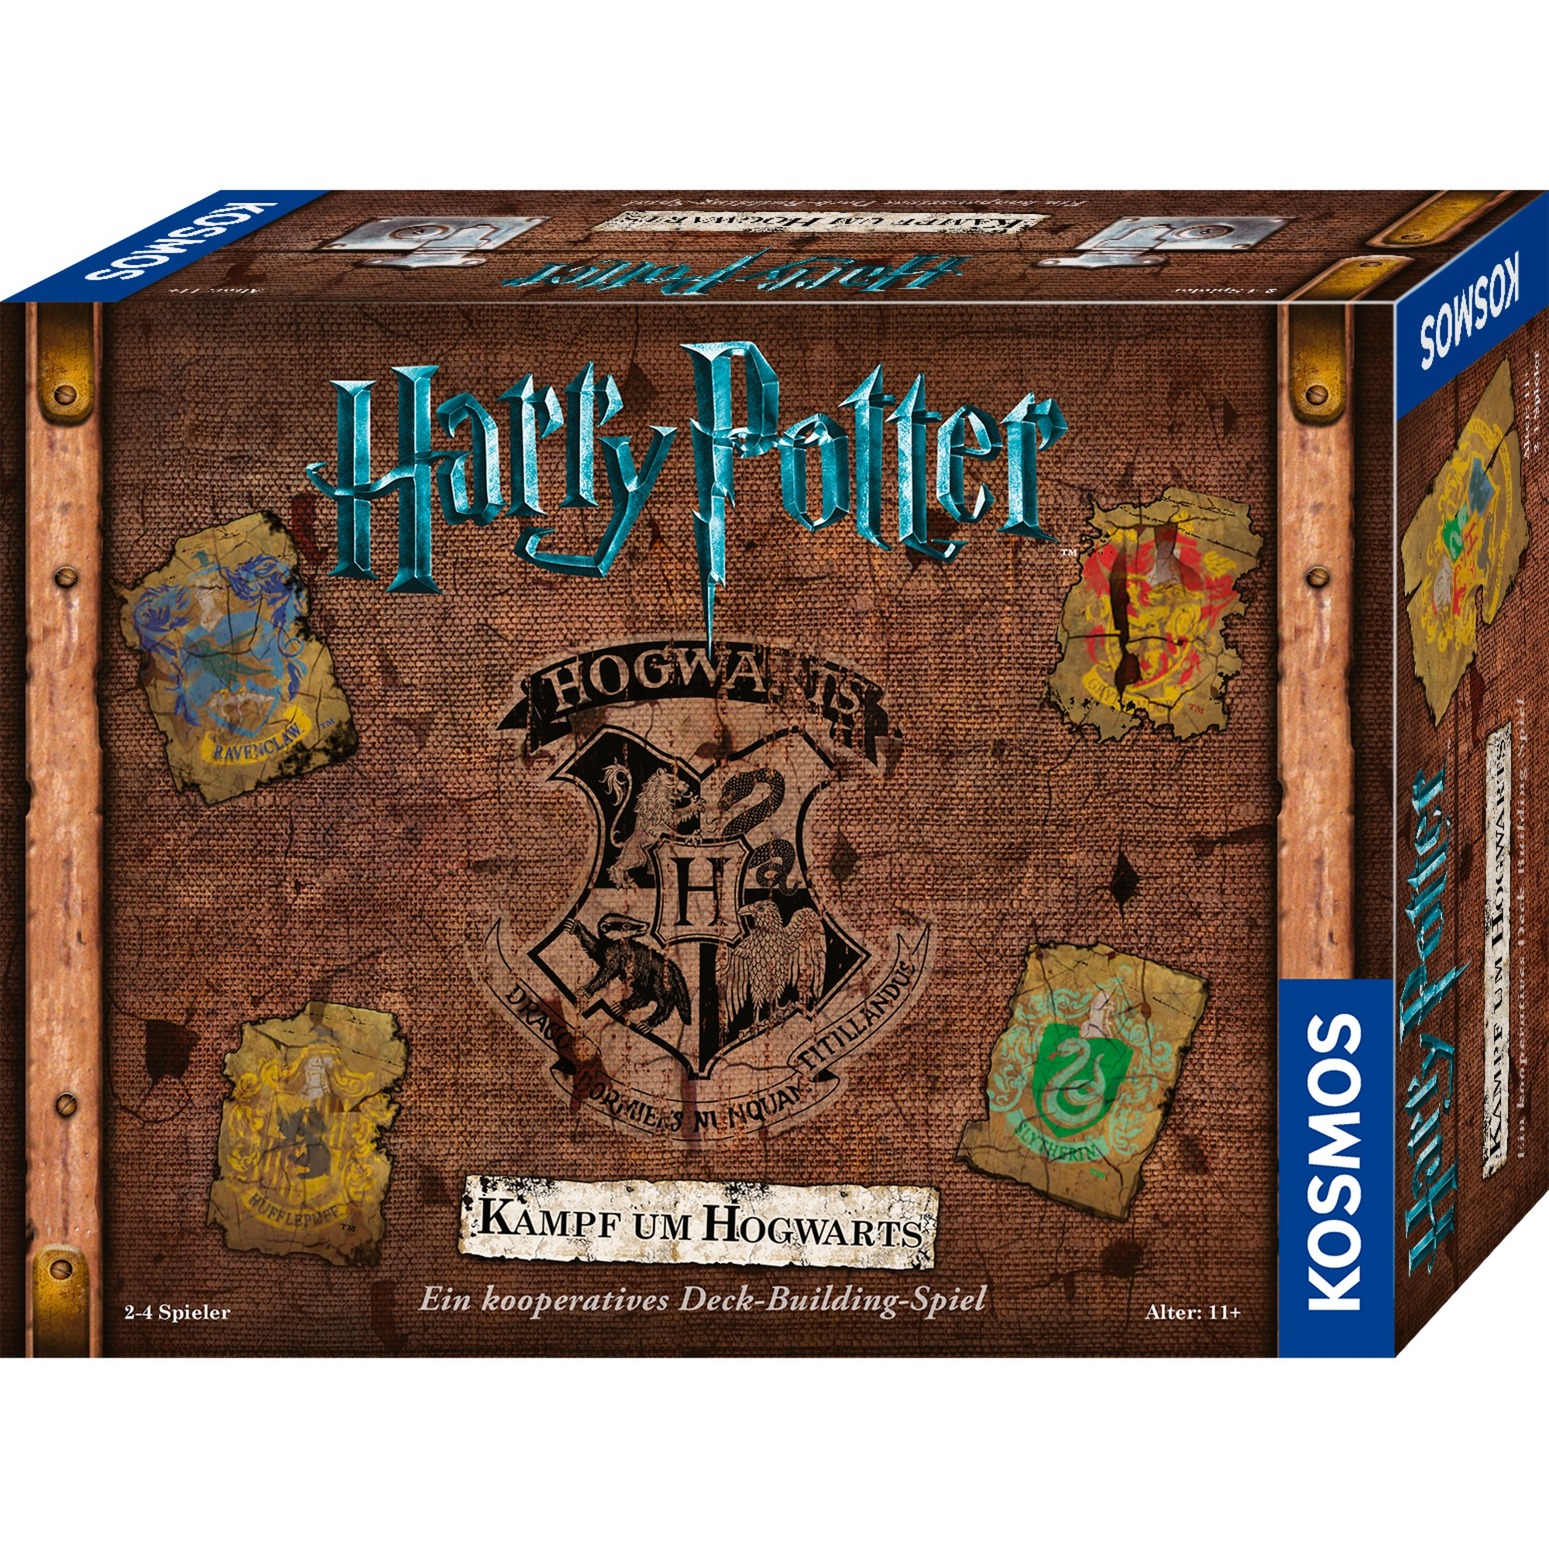 Image of Alternate - Harry Potter - Kampf um Hogwarts, Brettspiel online einkaufen bei Alternate